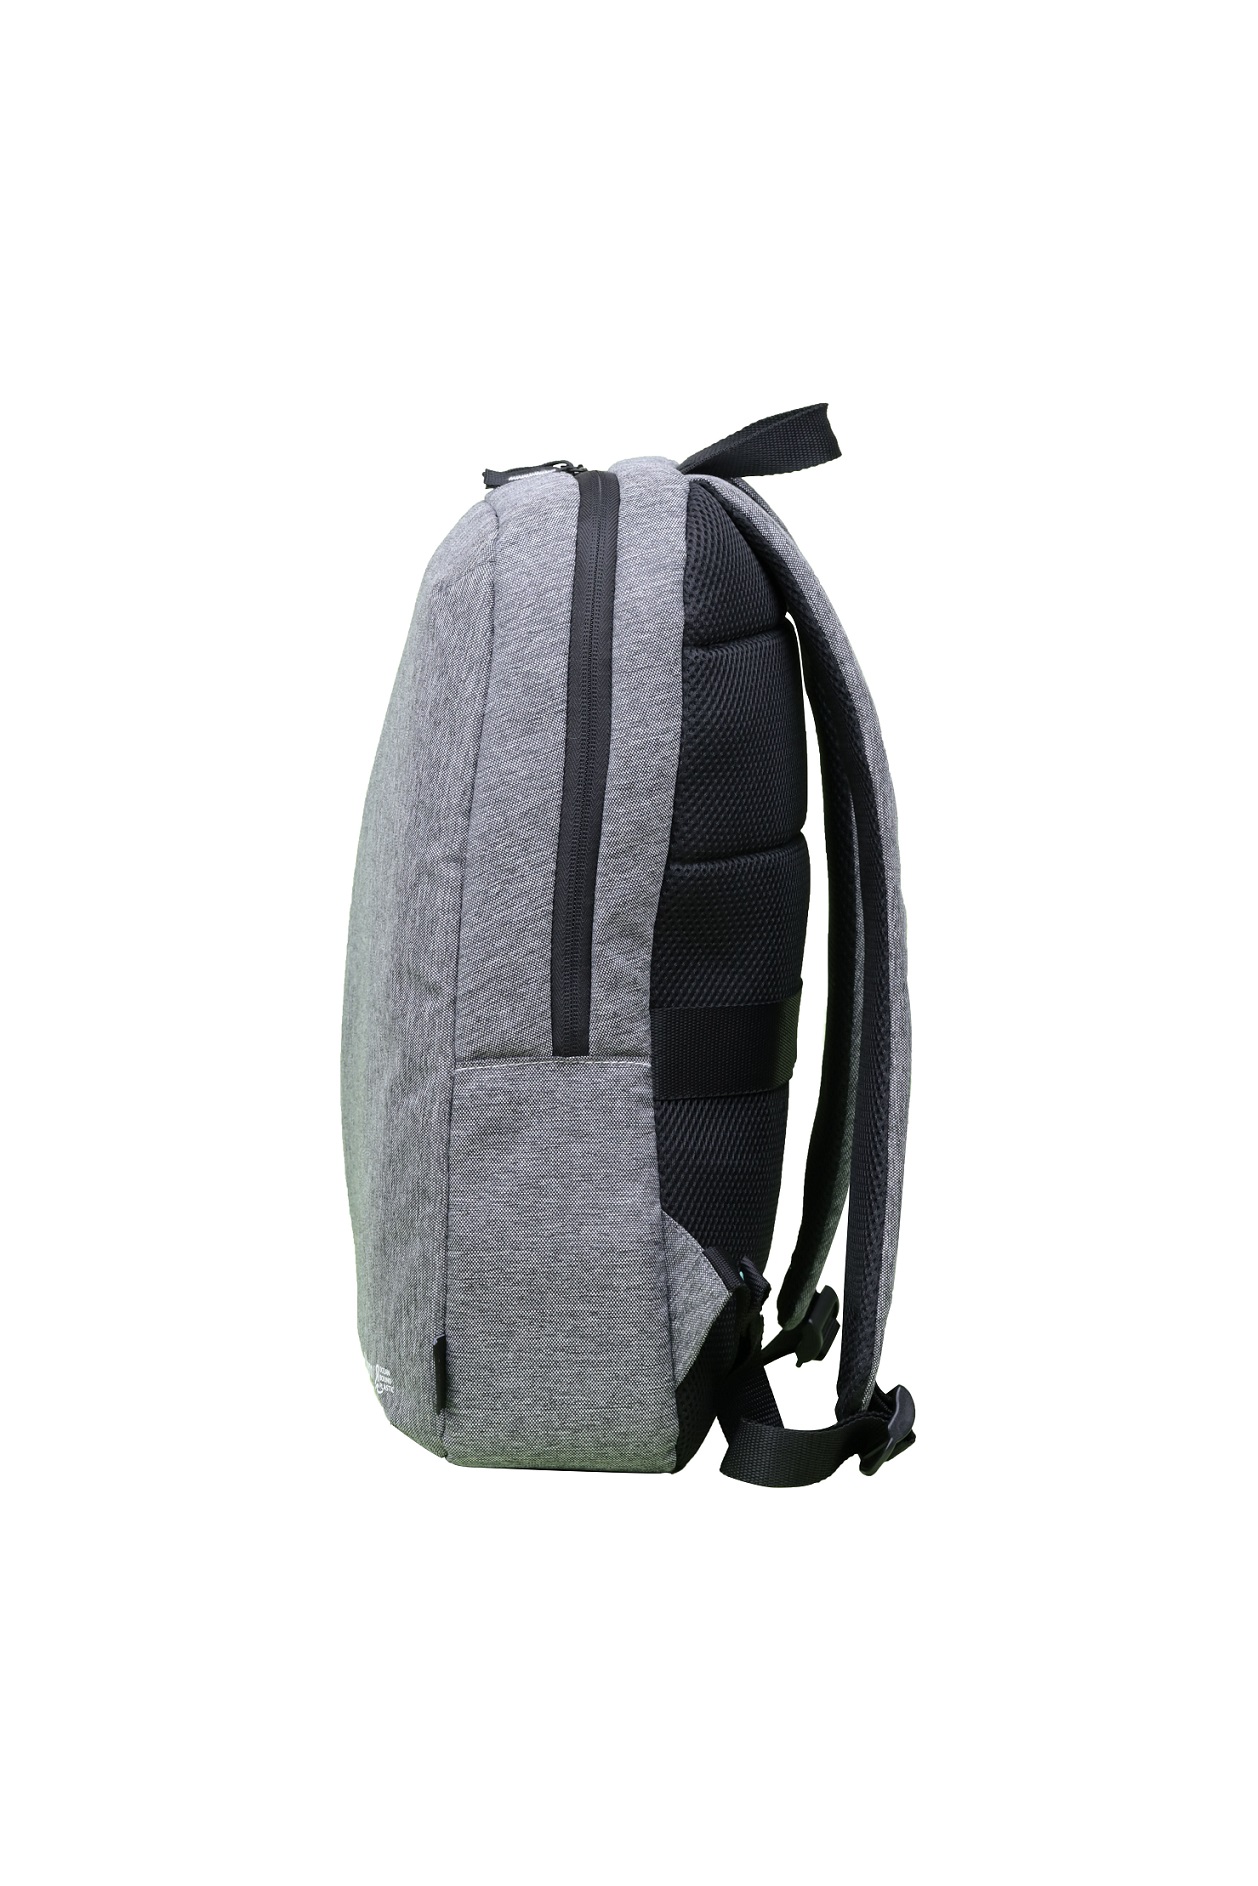 Obrázek Acer Vero OBP backpack 15.6", retail pack